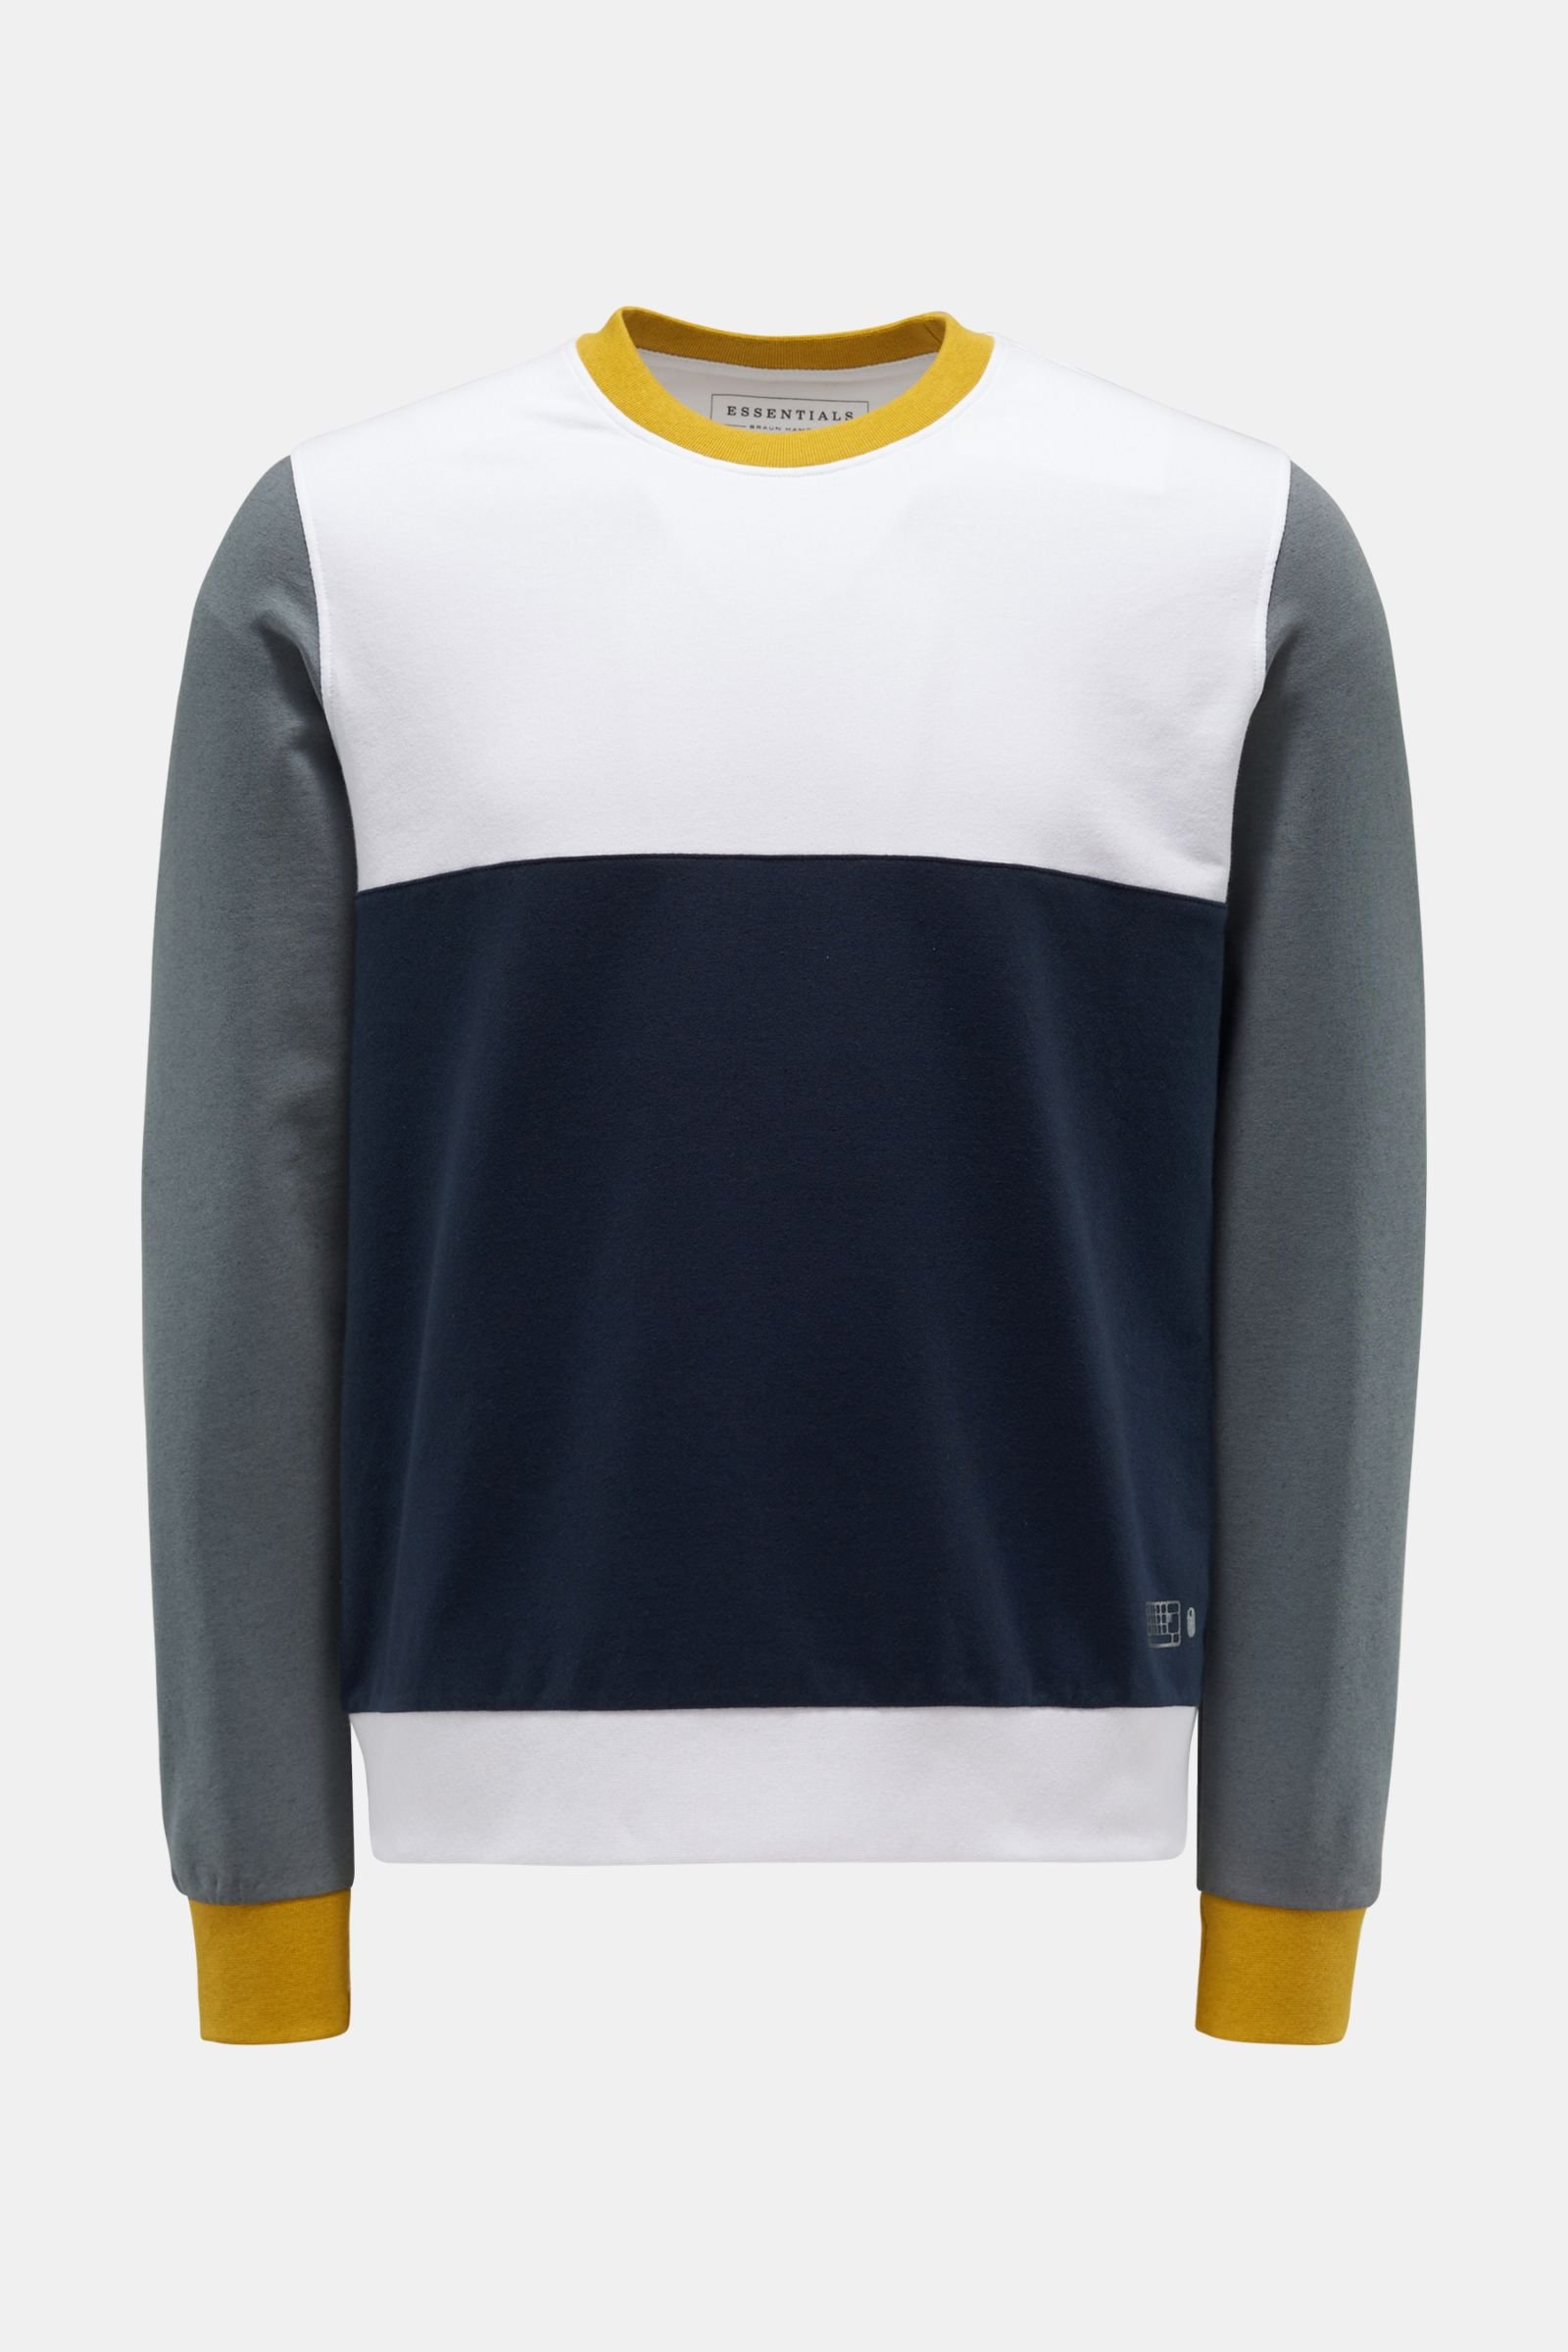 Crew neck sweatshirt white/navy/yellow